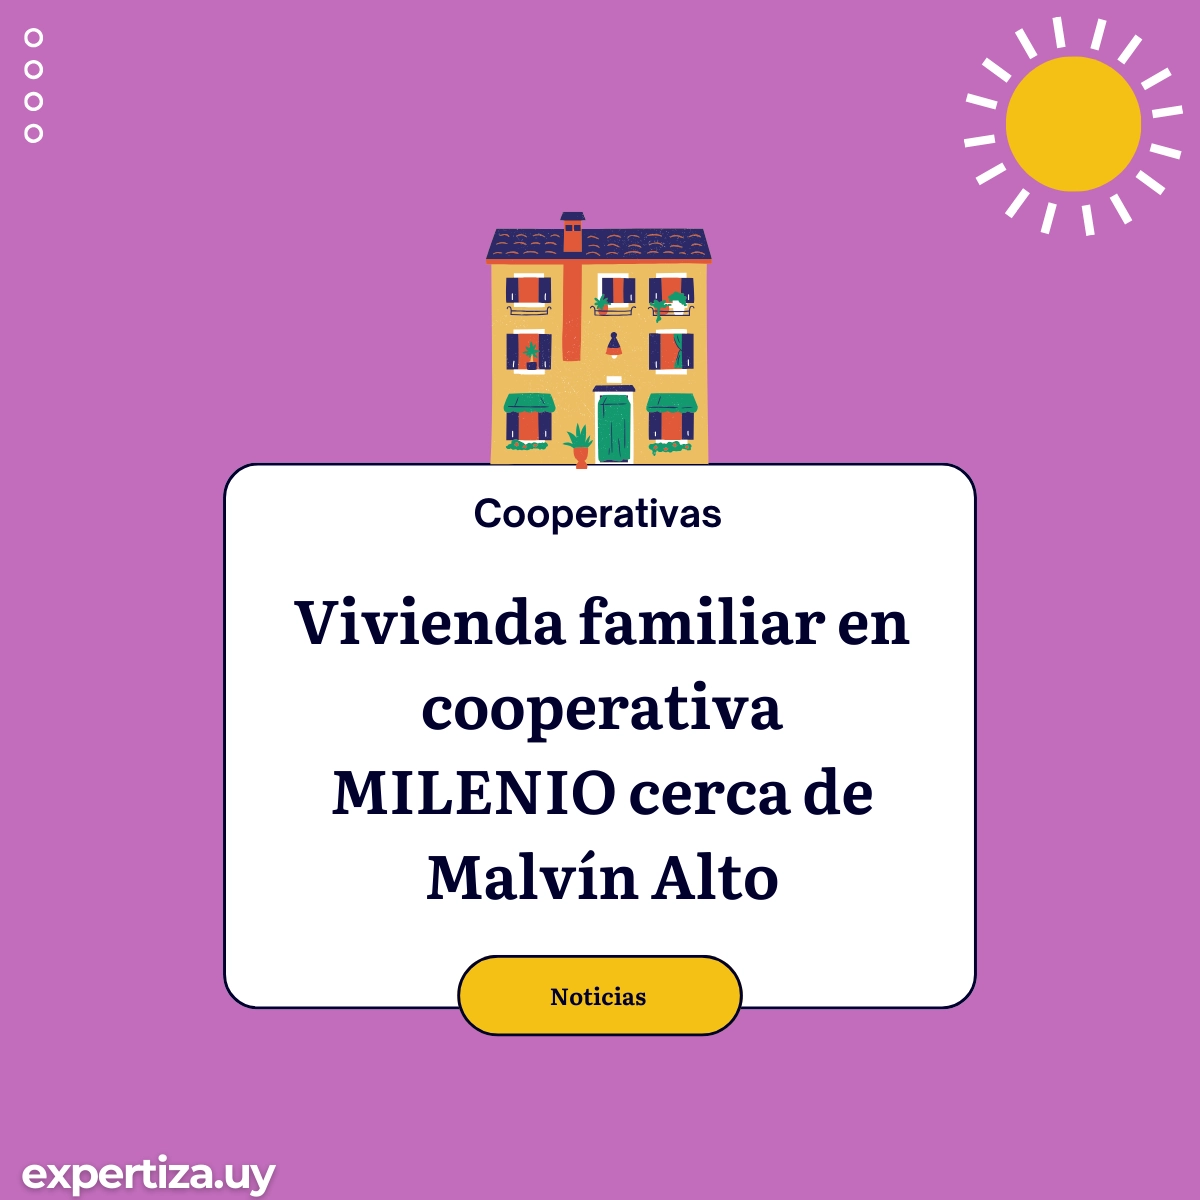 Vivienda familiar en cooperativa  MILENIO cerca de Malvín Alto.